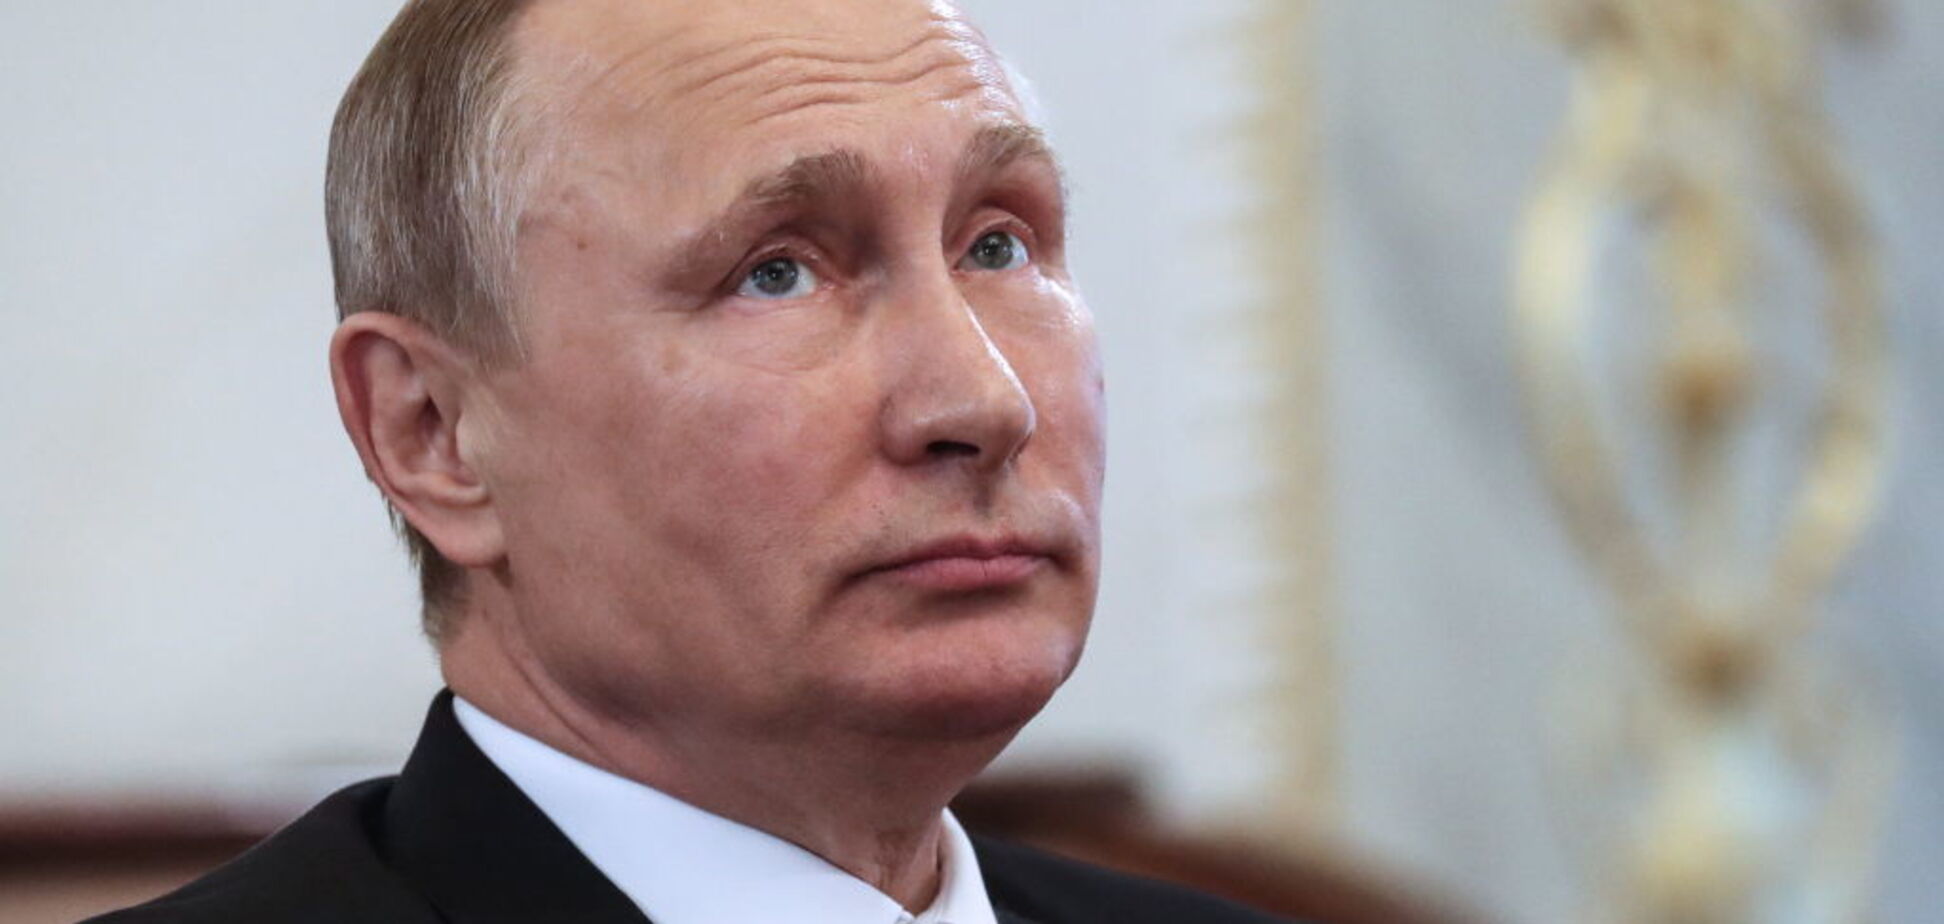 'ЕС оказался поросятами': Цимбалюк высмеял послание Путина 